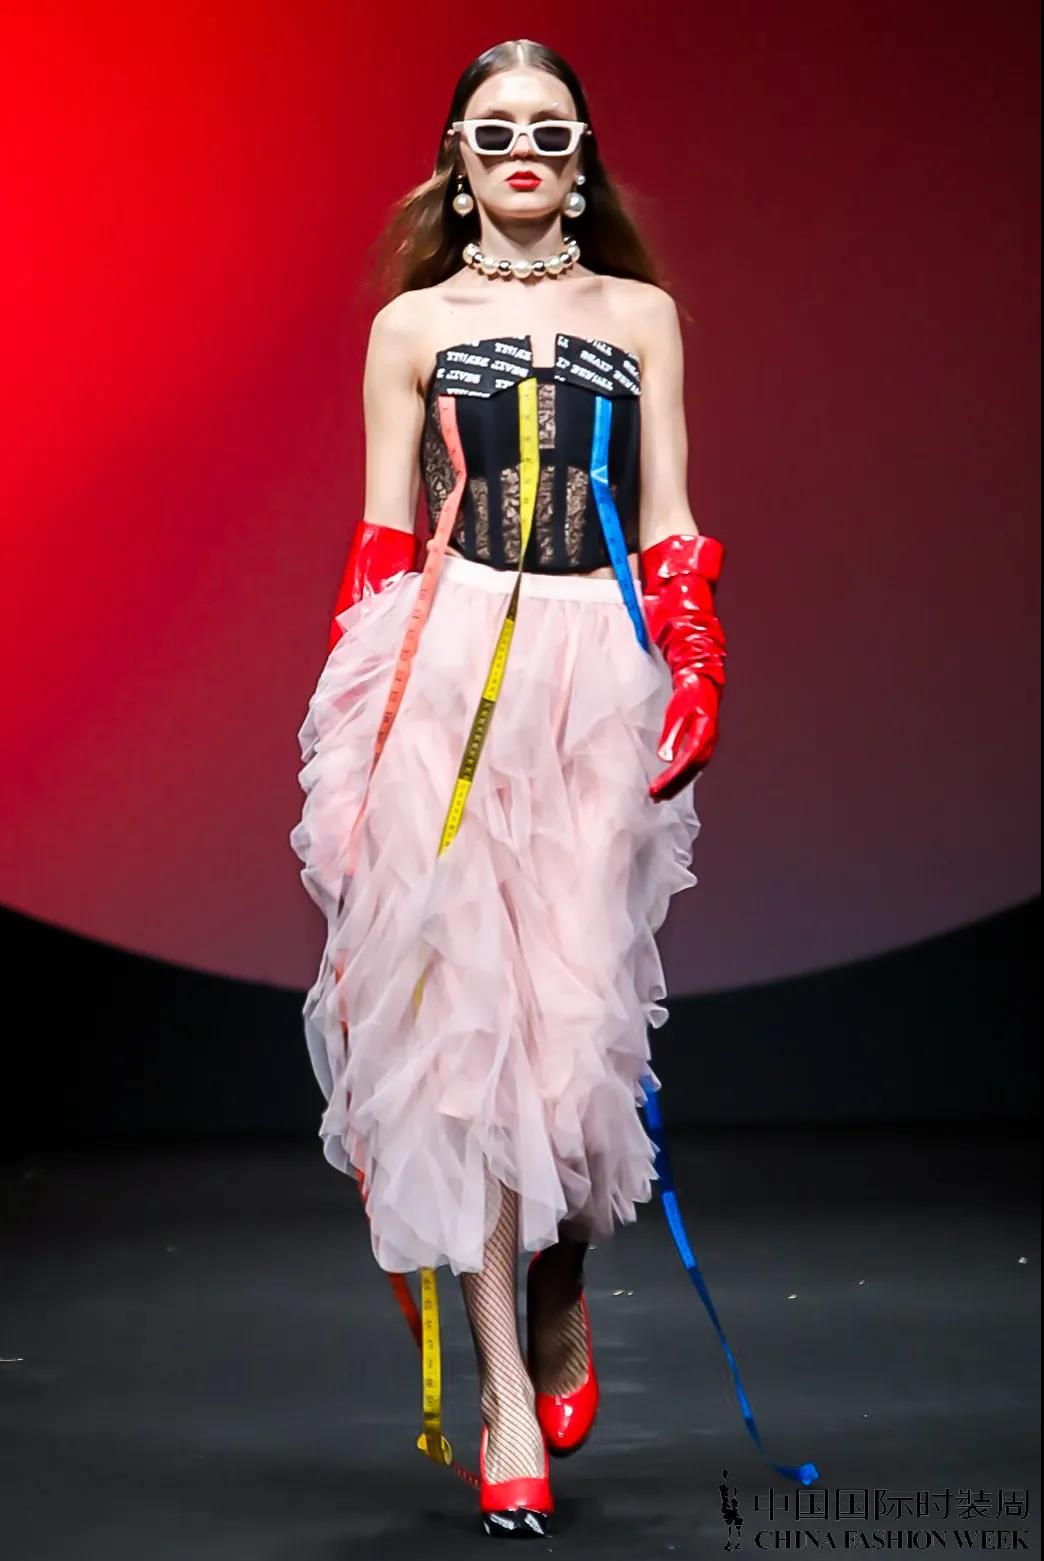 上海时装周 DAMOWANG 2021 春夏系列秀场回顾-服装设计新闻-资讯-服装设计网手机版|触屏版